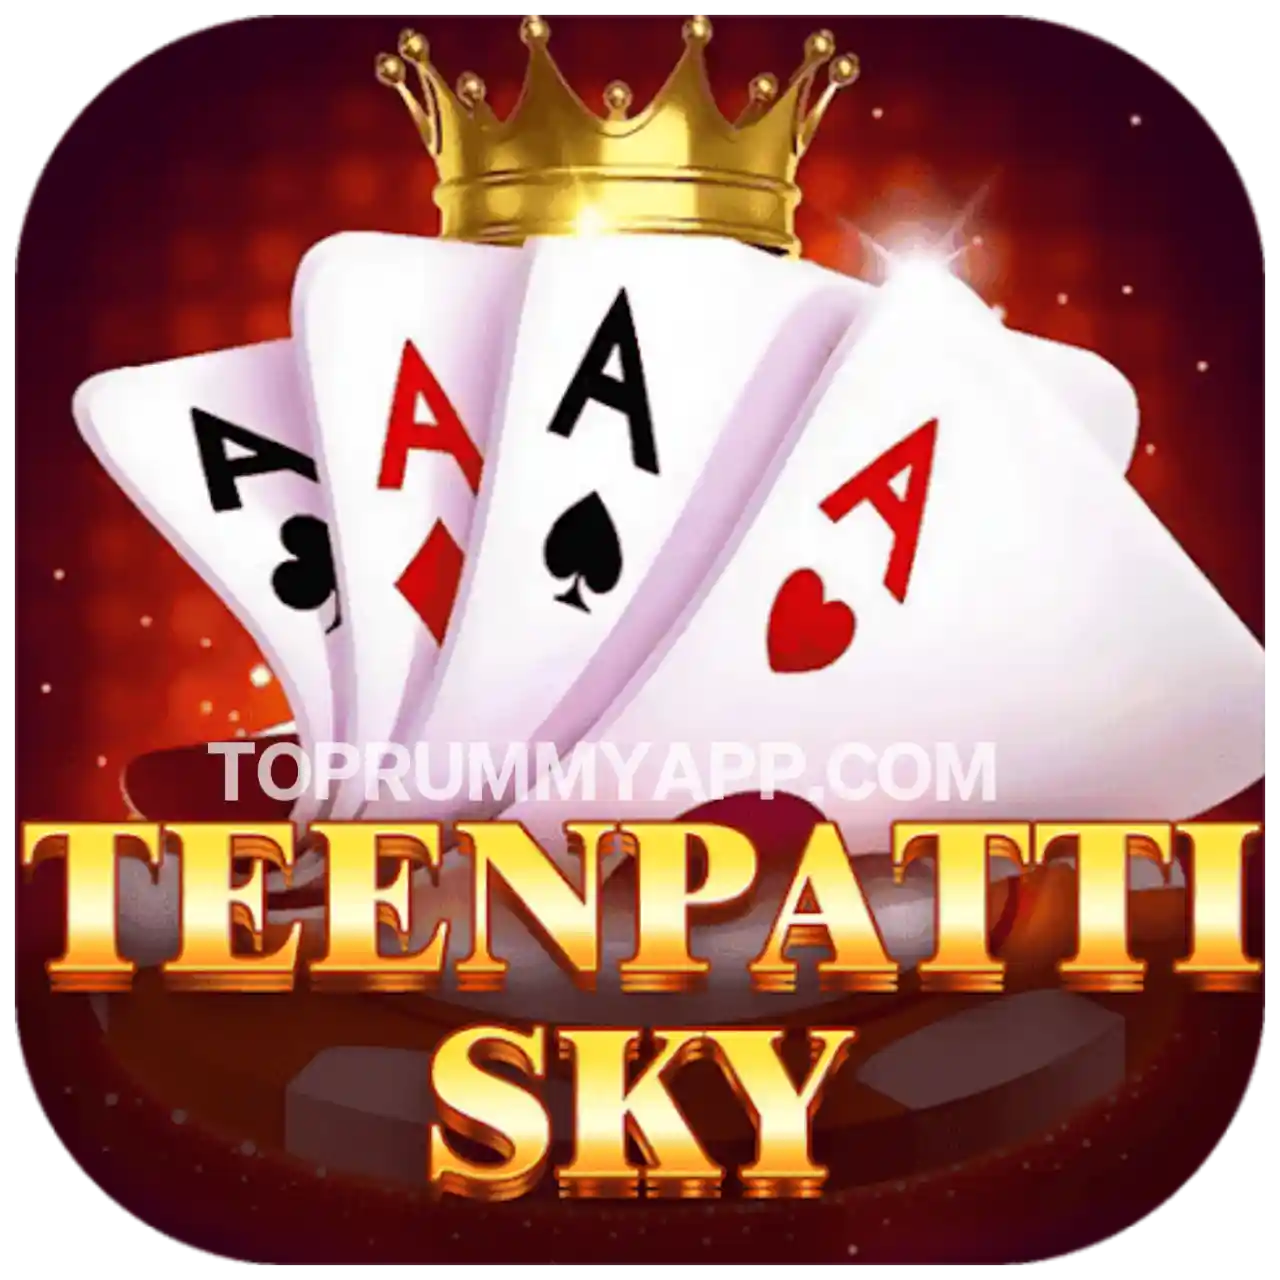 Teen Patti Sky Apk Download - Top 10 Teen Patti App List